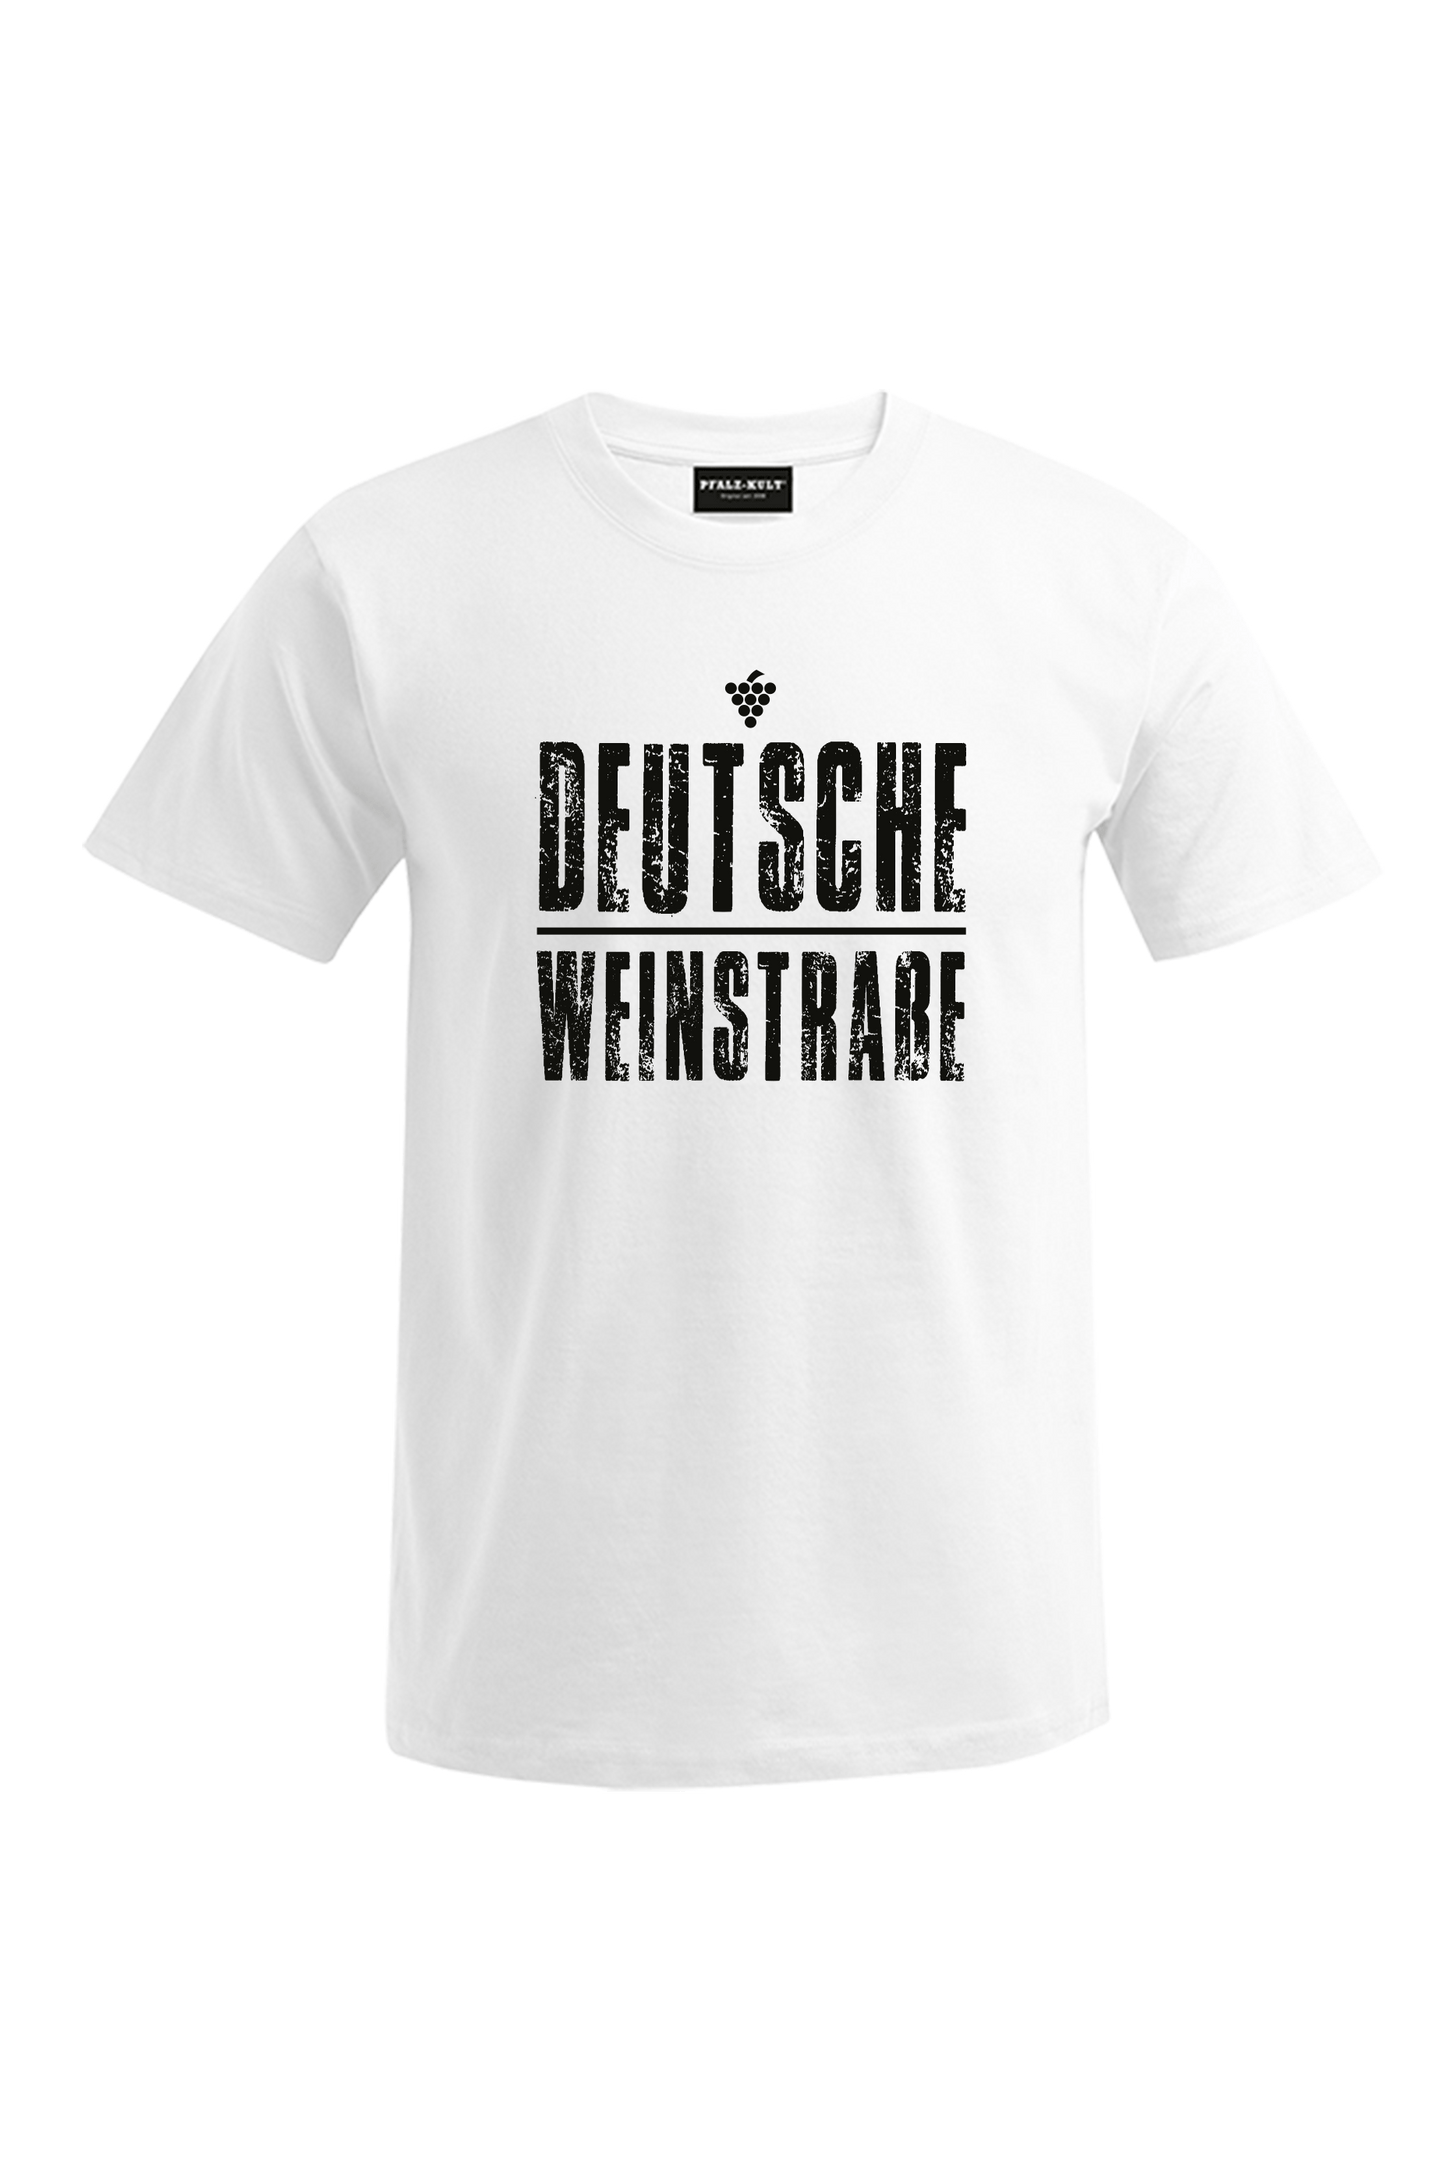 Weißes T-Shirt mit dem Aufdruck "Deutsche Weinstrasse" .  Das ideale Geschenk für jedes Pfalzkind vom Textildruck Spezialisten aus Bad Dürkheim.